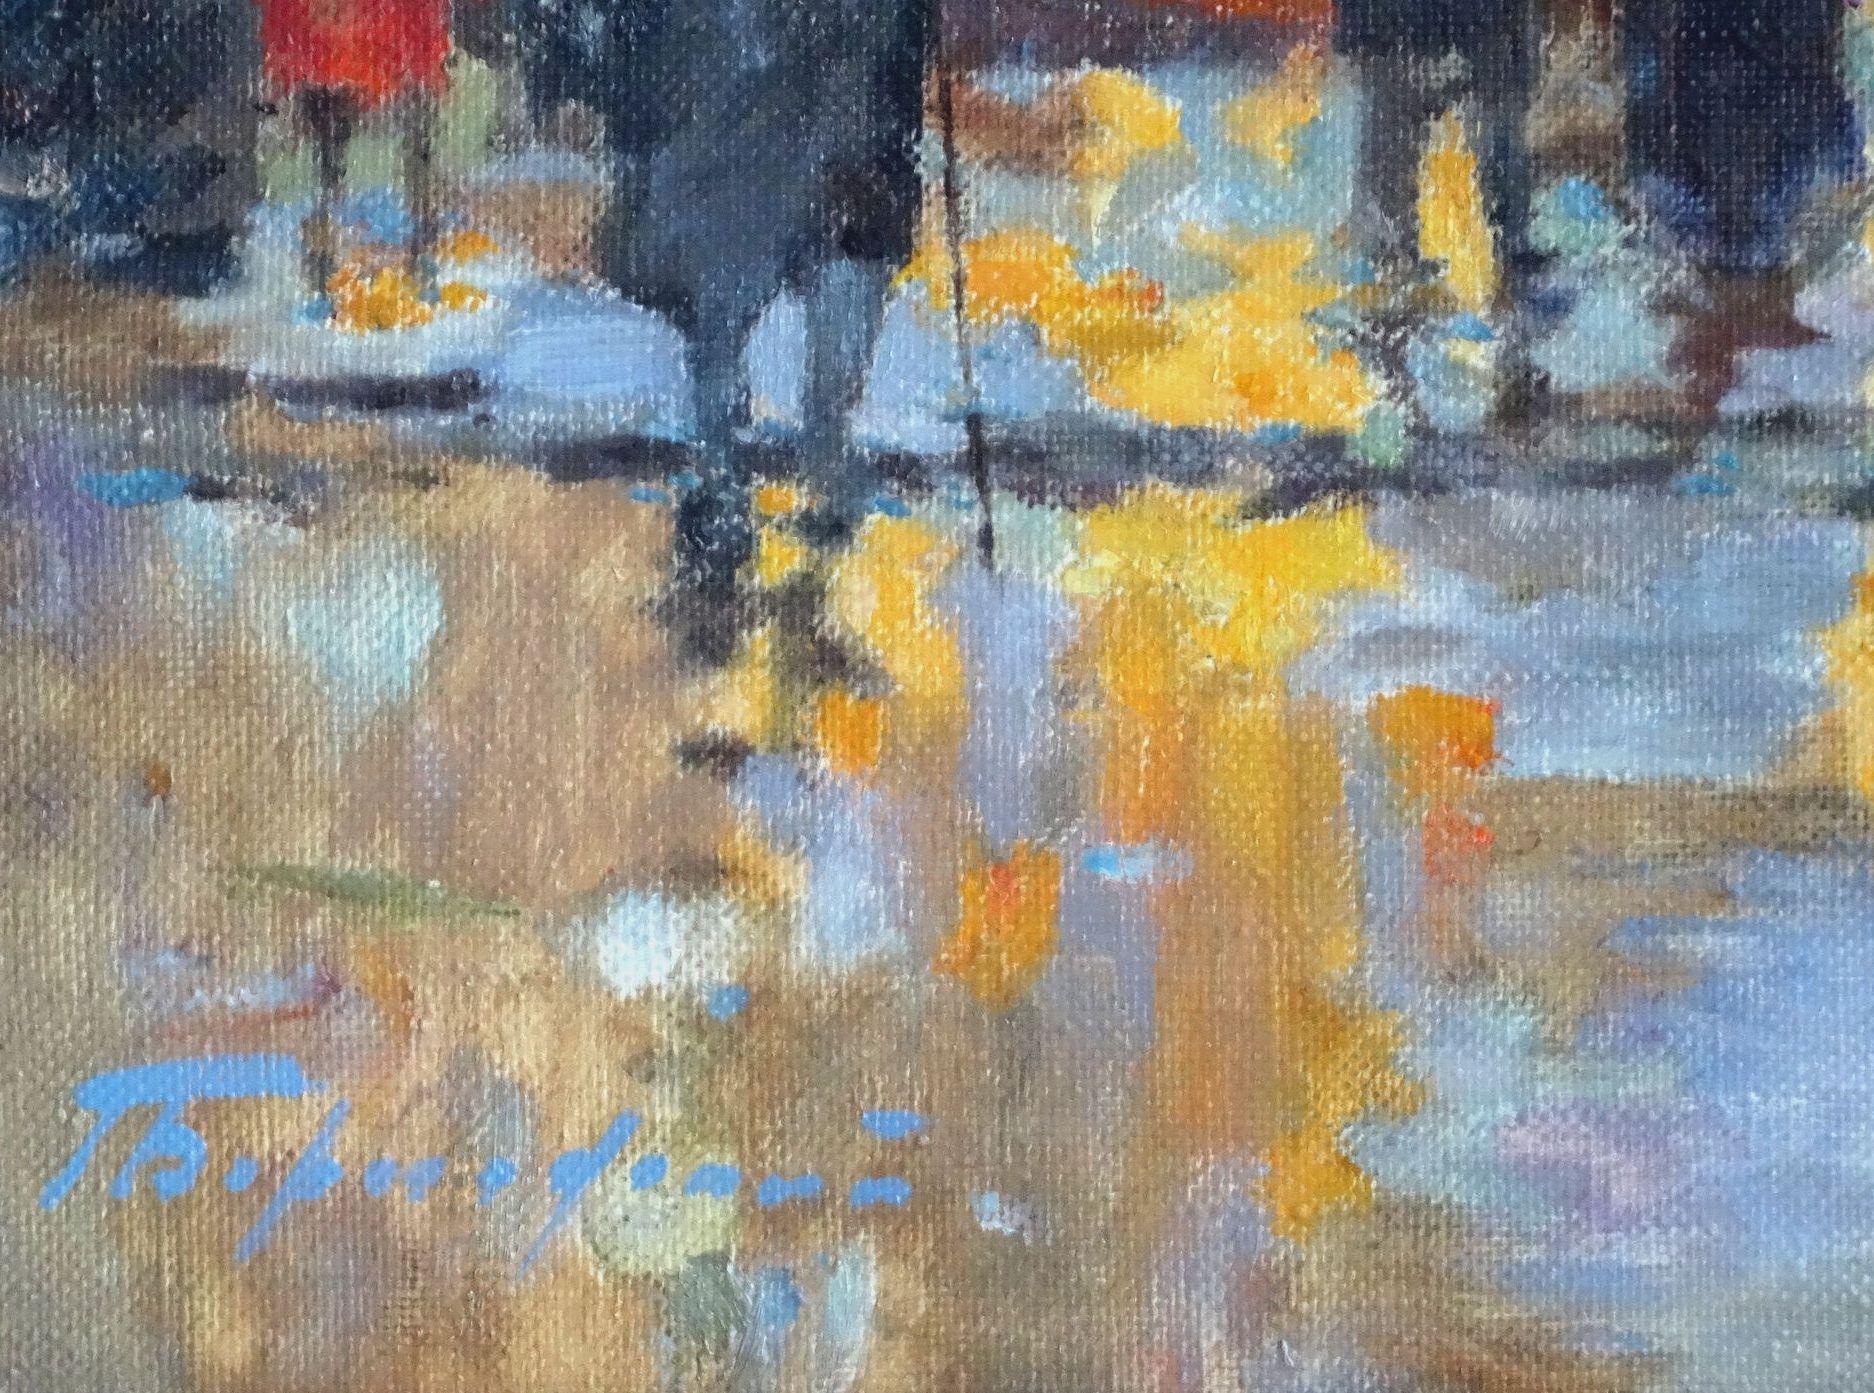 Nach dem Regen. Paris. Öl auf Leinwand, 54, 5x80 cm, Öl (Expressionismus), Painting, von Gennady Bernadsky 